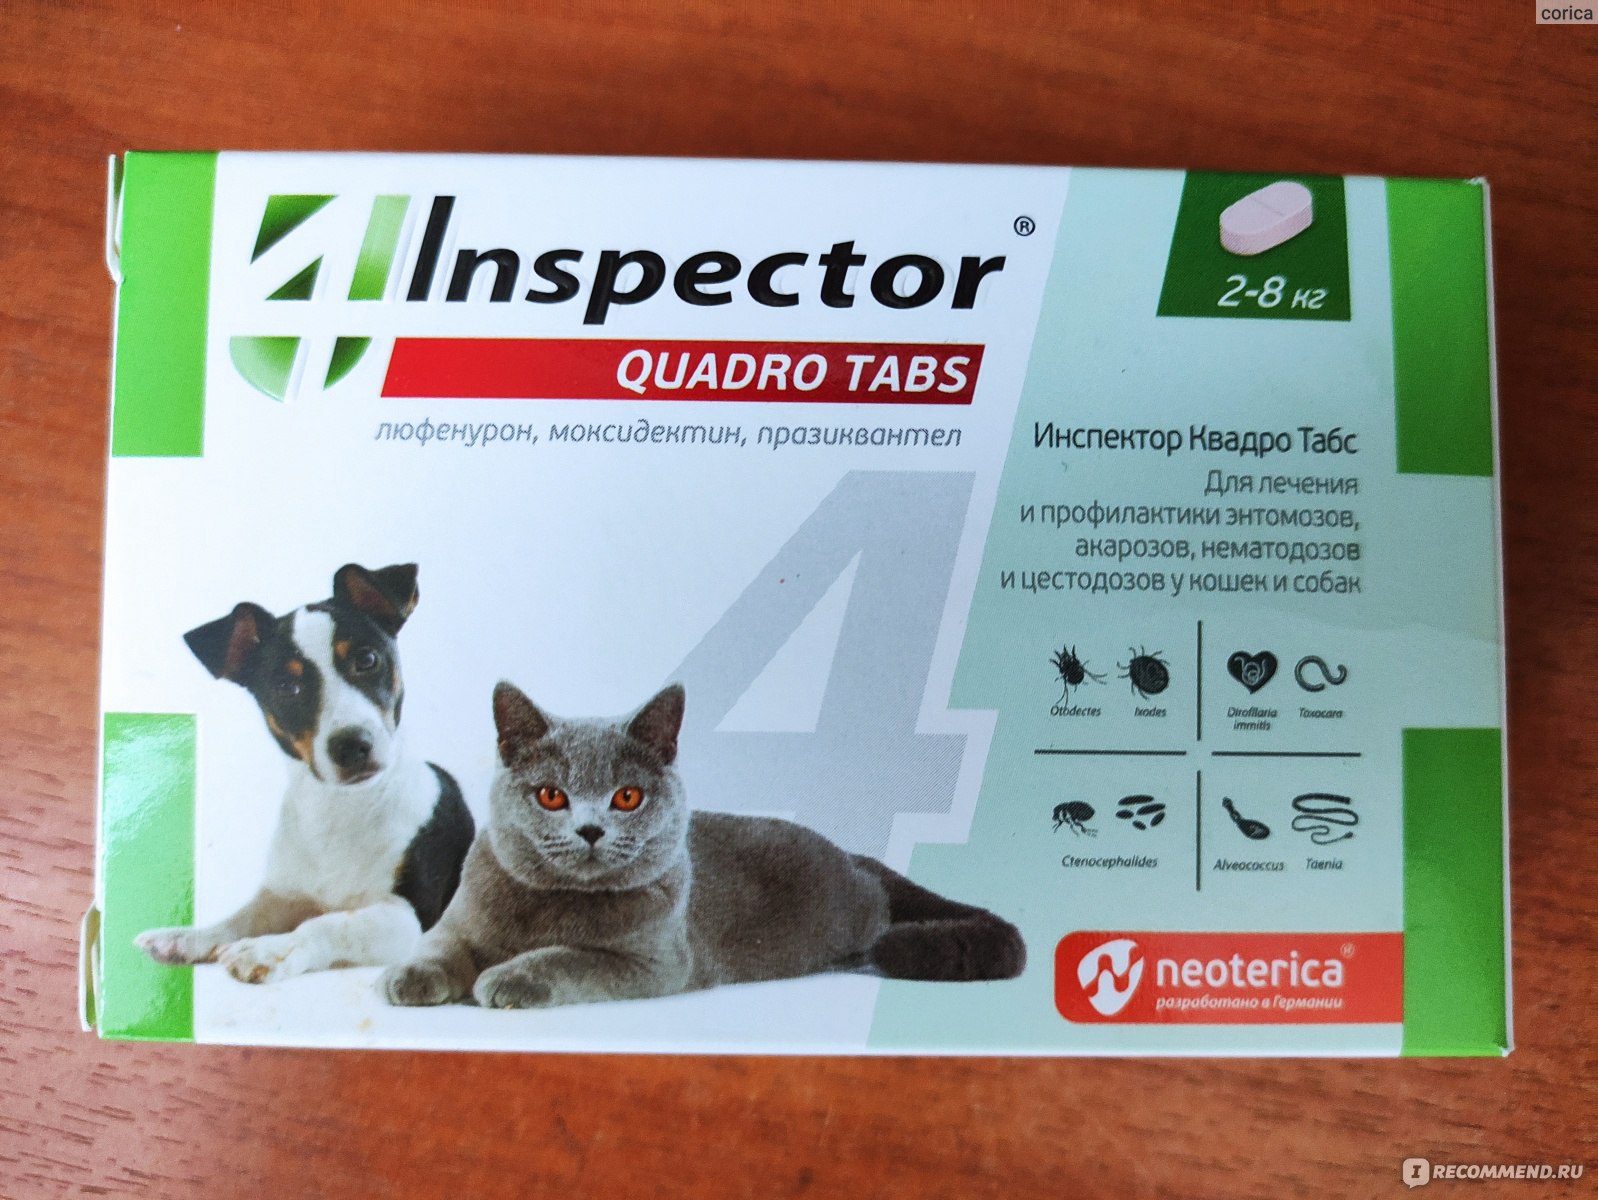 Inspector quadro tabs цены. Inspector Quadro таблетки для собак 2-8 кг. Инспектор Quadro для кошек и собак 2-8 кг, 4 таб. Inspector раствор от блох и клещей Quadro к от 4 до 8 кг для кошек. Inspector таблетки от блох и клещей Quadro Tabs от 16 кг для собак.